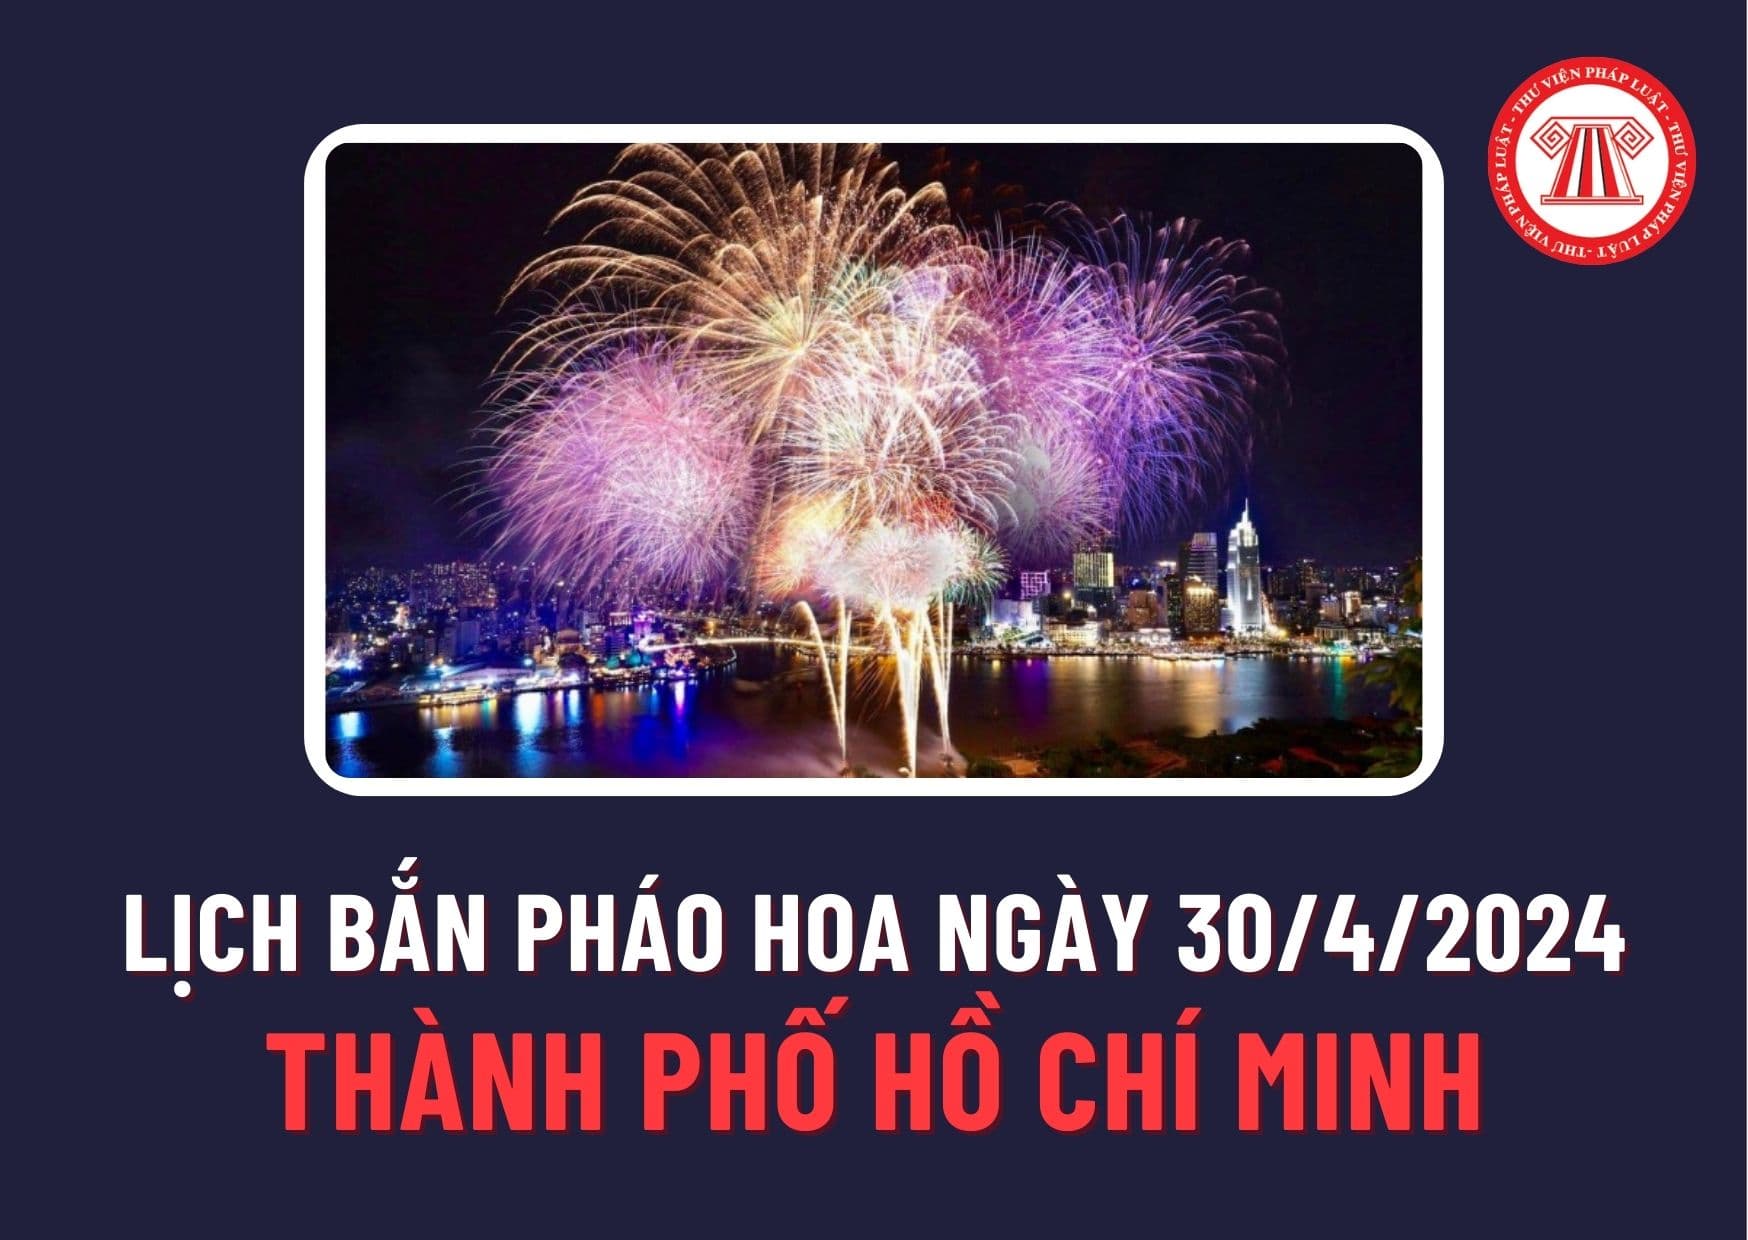 Lịch bắn pháo hoa ngày 30/4 năm 2024 ở Thành phố Hồ Chí Minh ra sao? Sẽ tổ chức bắn pháo hoa những địa điểm nào?